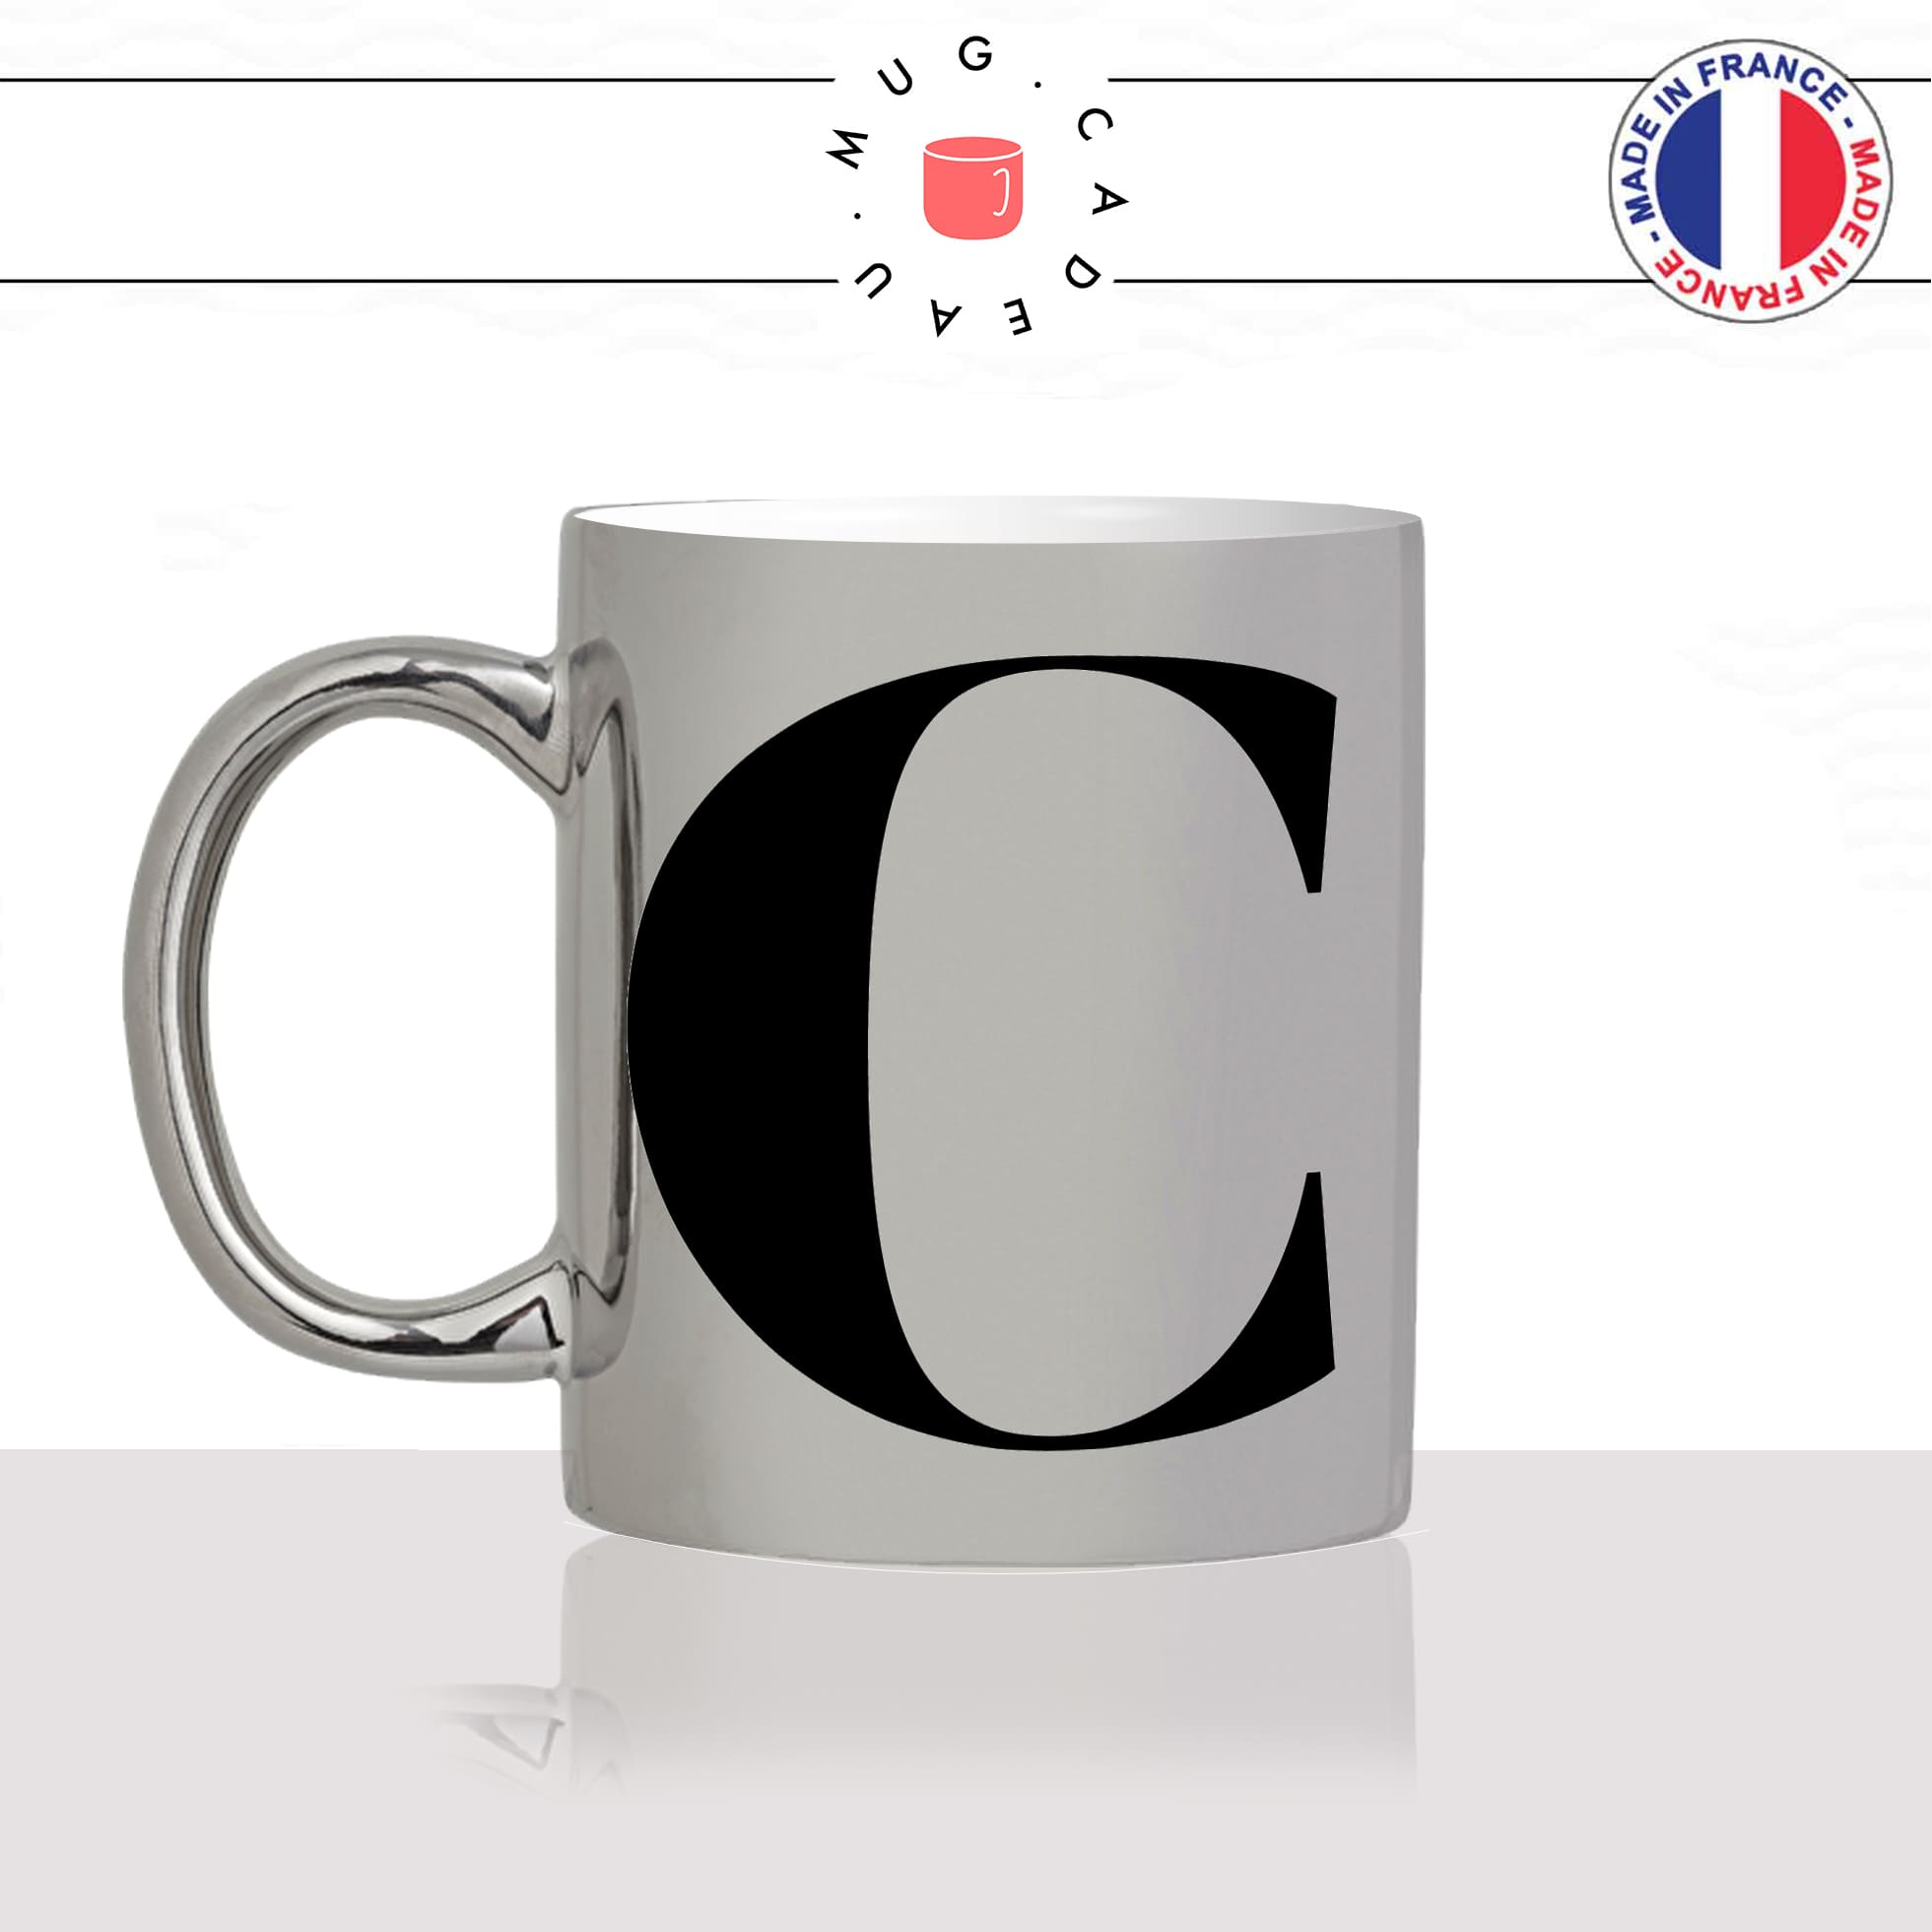 mug-tasse-argent-argenté-silver-initiale-C-corinne-clara-claire-cleo-chloé-camille-lettre-collegue-original-idée-cadeau-fun-cool-café-thé